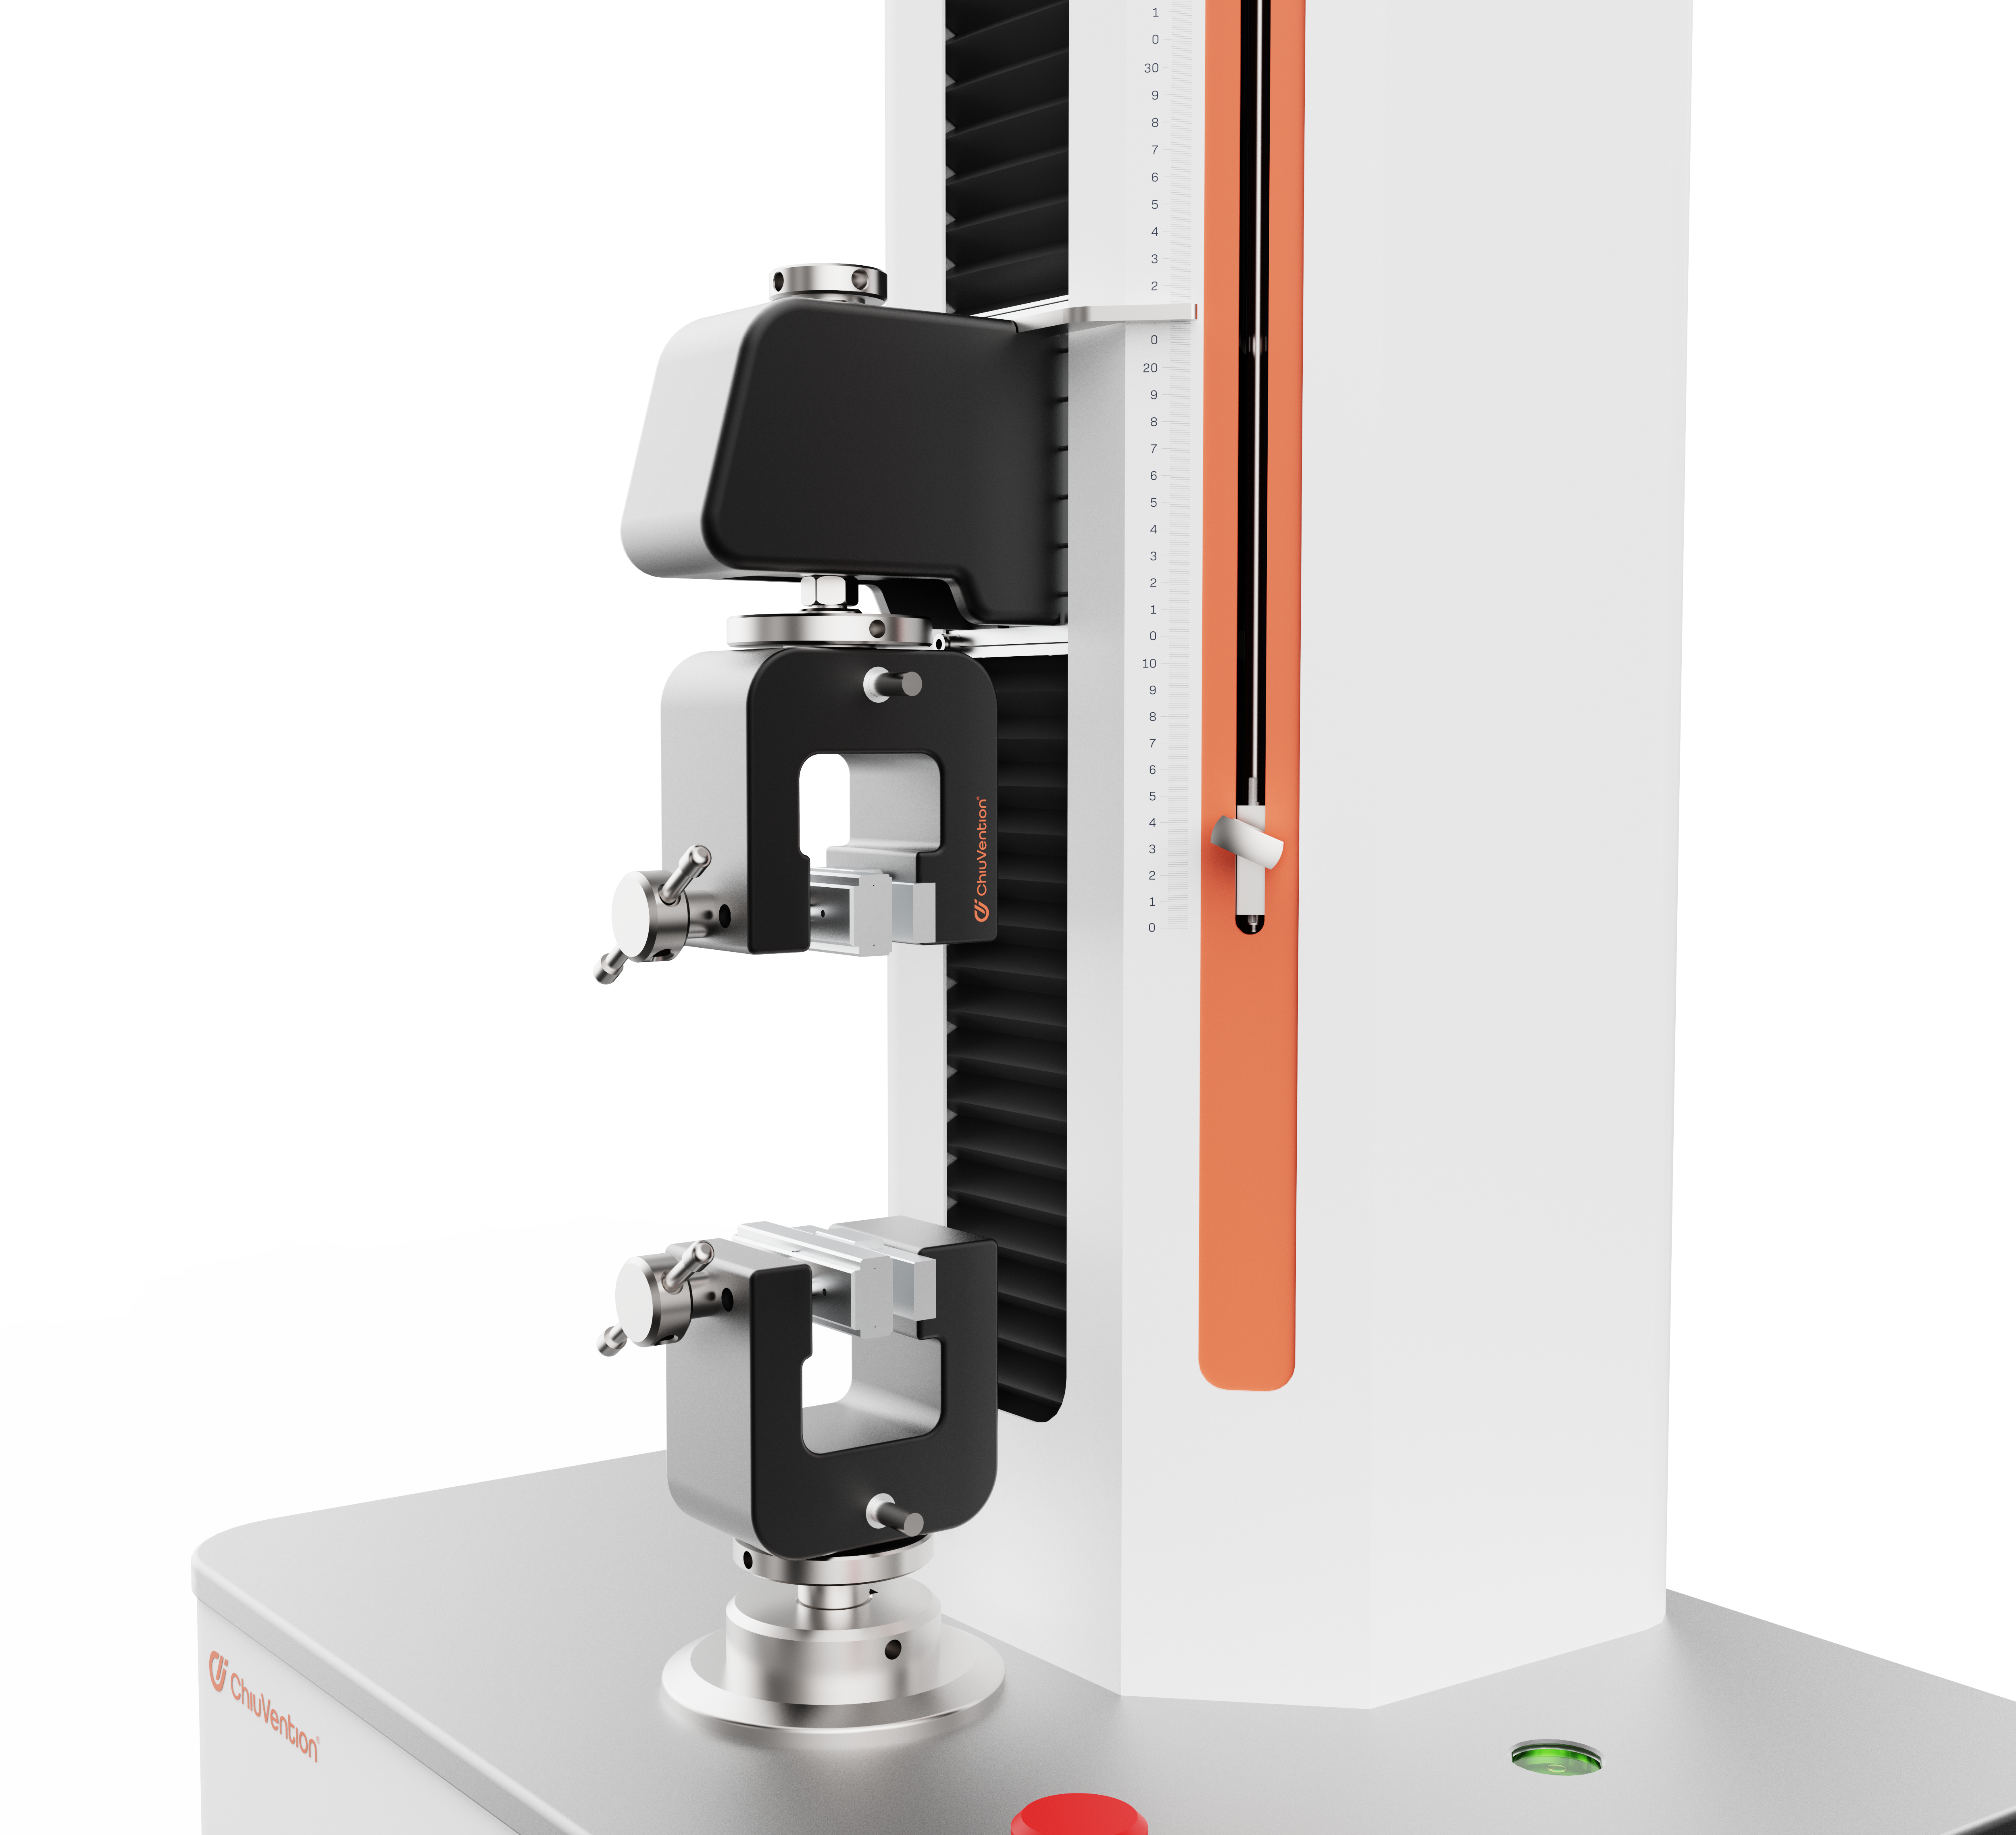 Tester di trazione SmartPull | Un nuovo strumento sviluppato dalla società sorella ChiuVention.